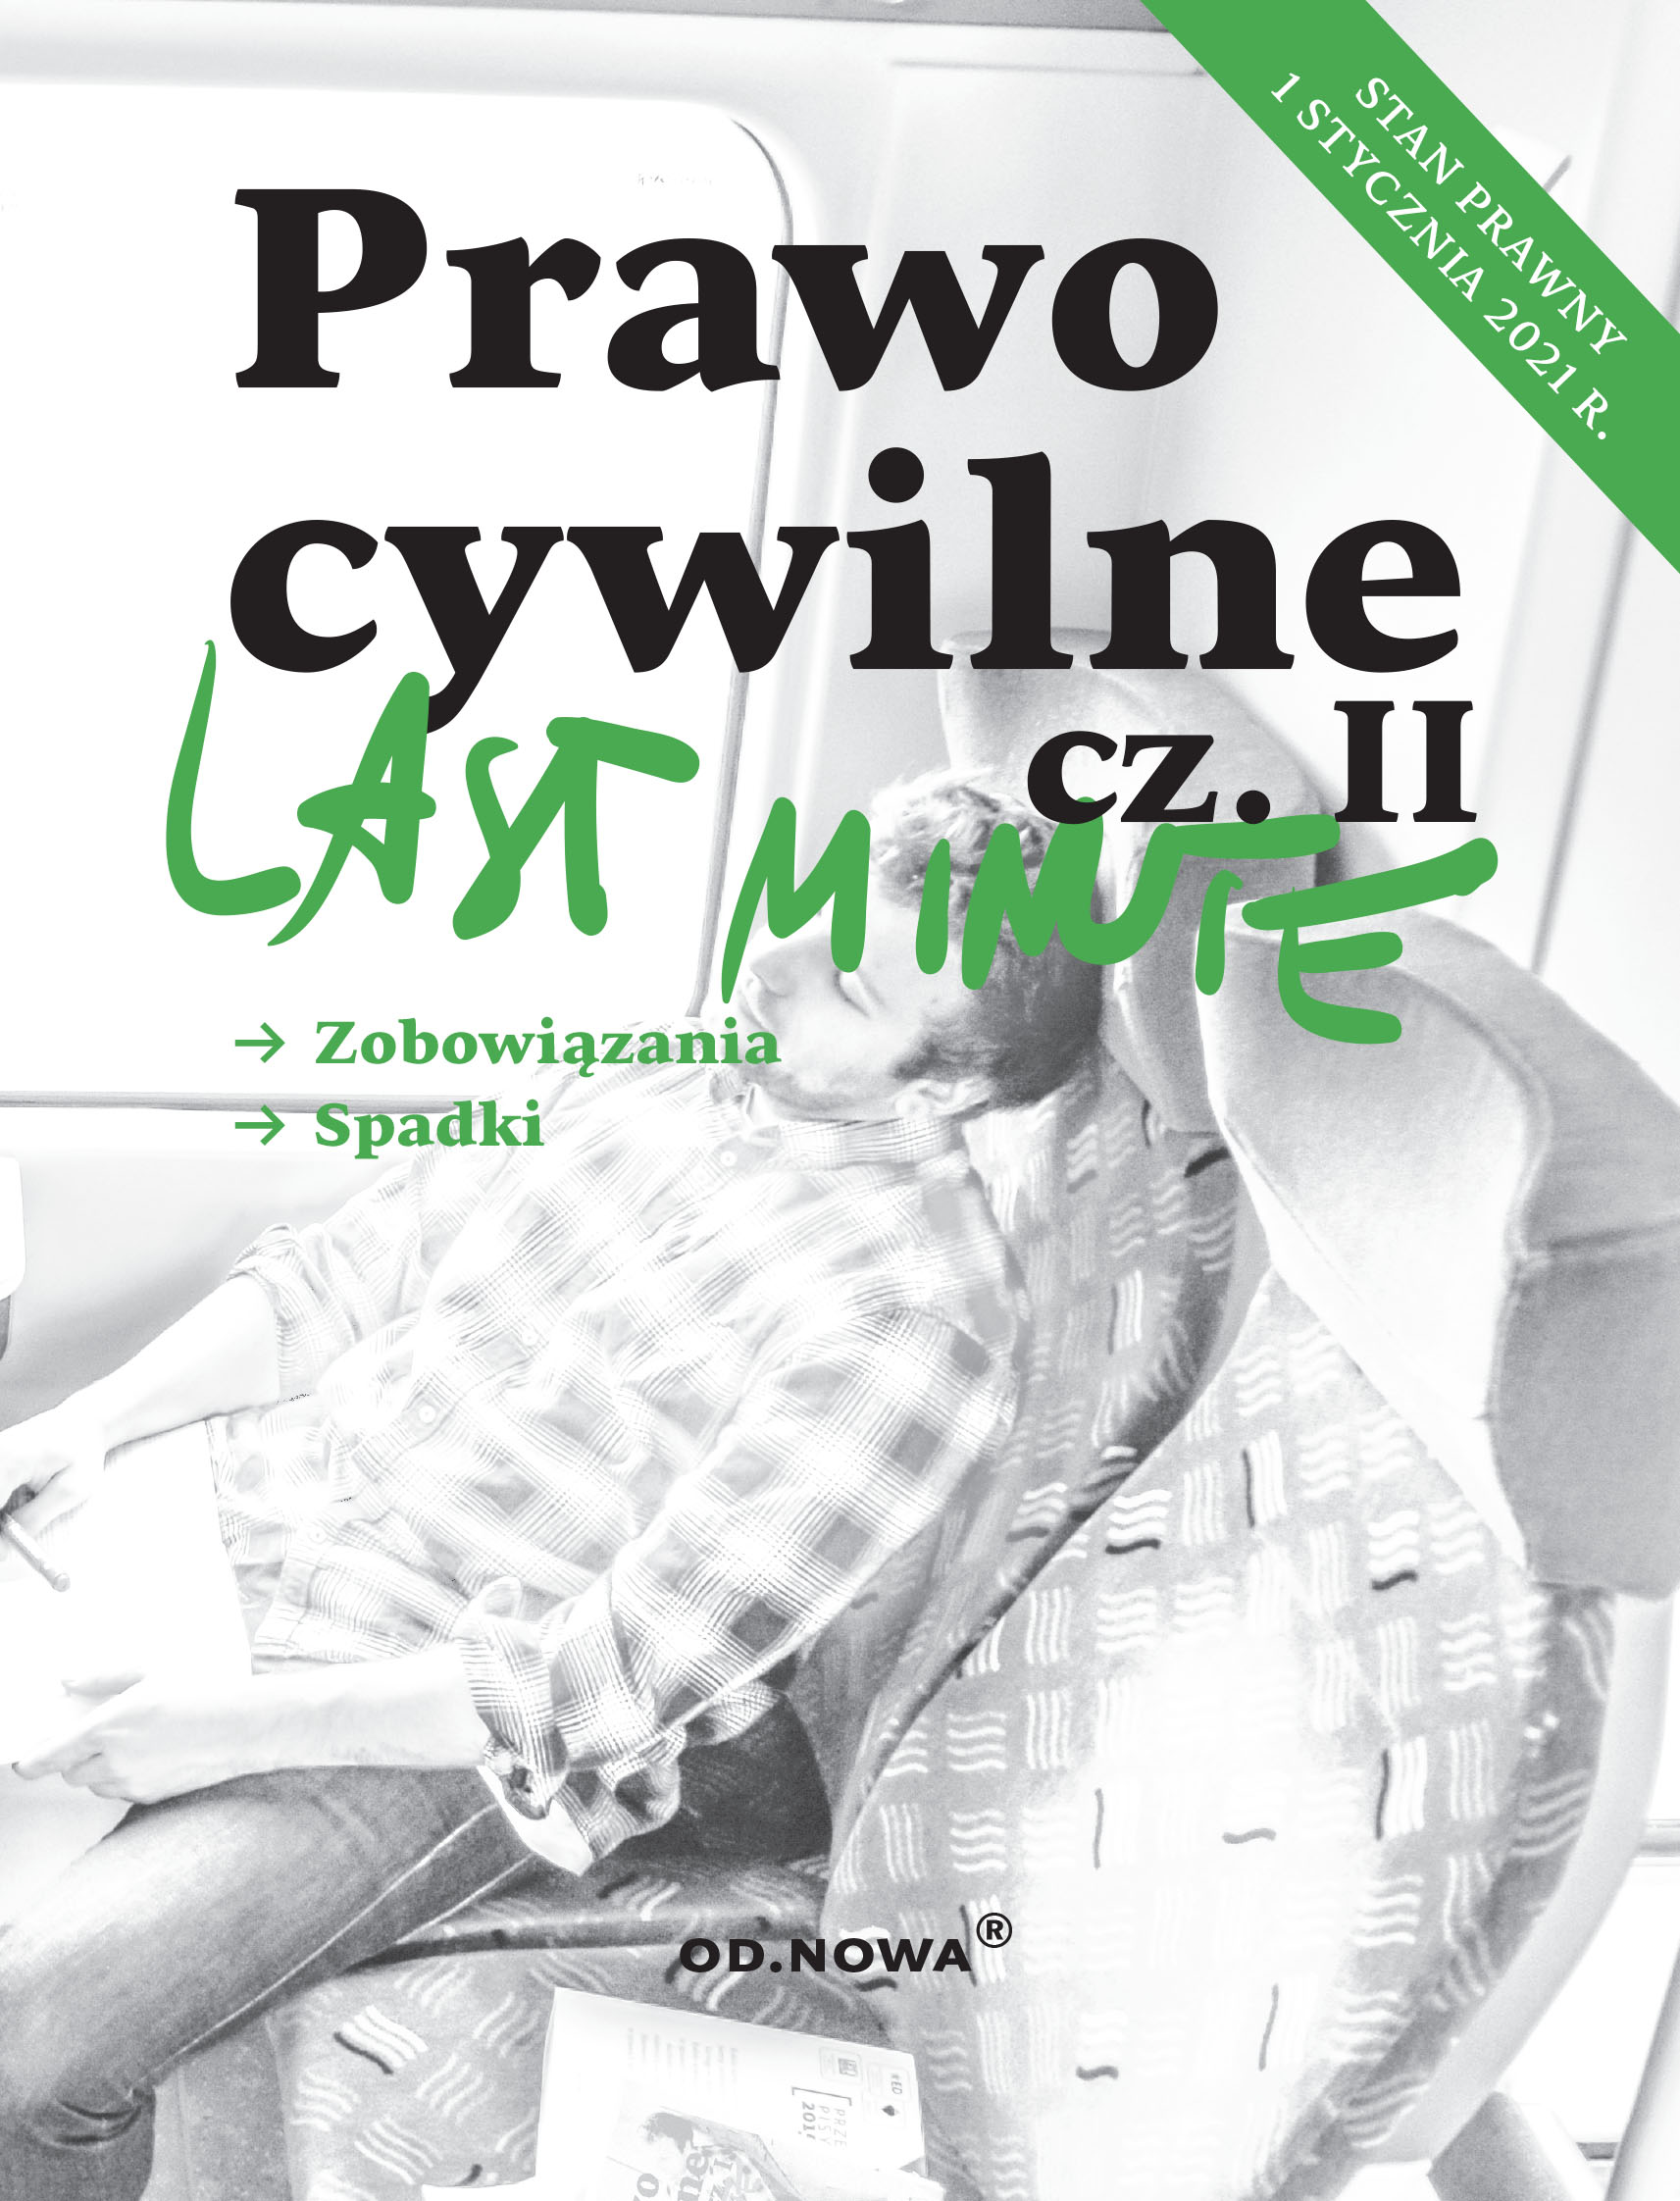 Last Minute Prawo Cywilne cz.II